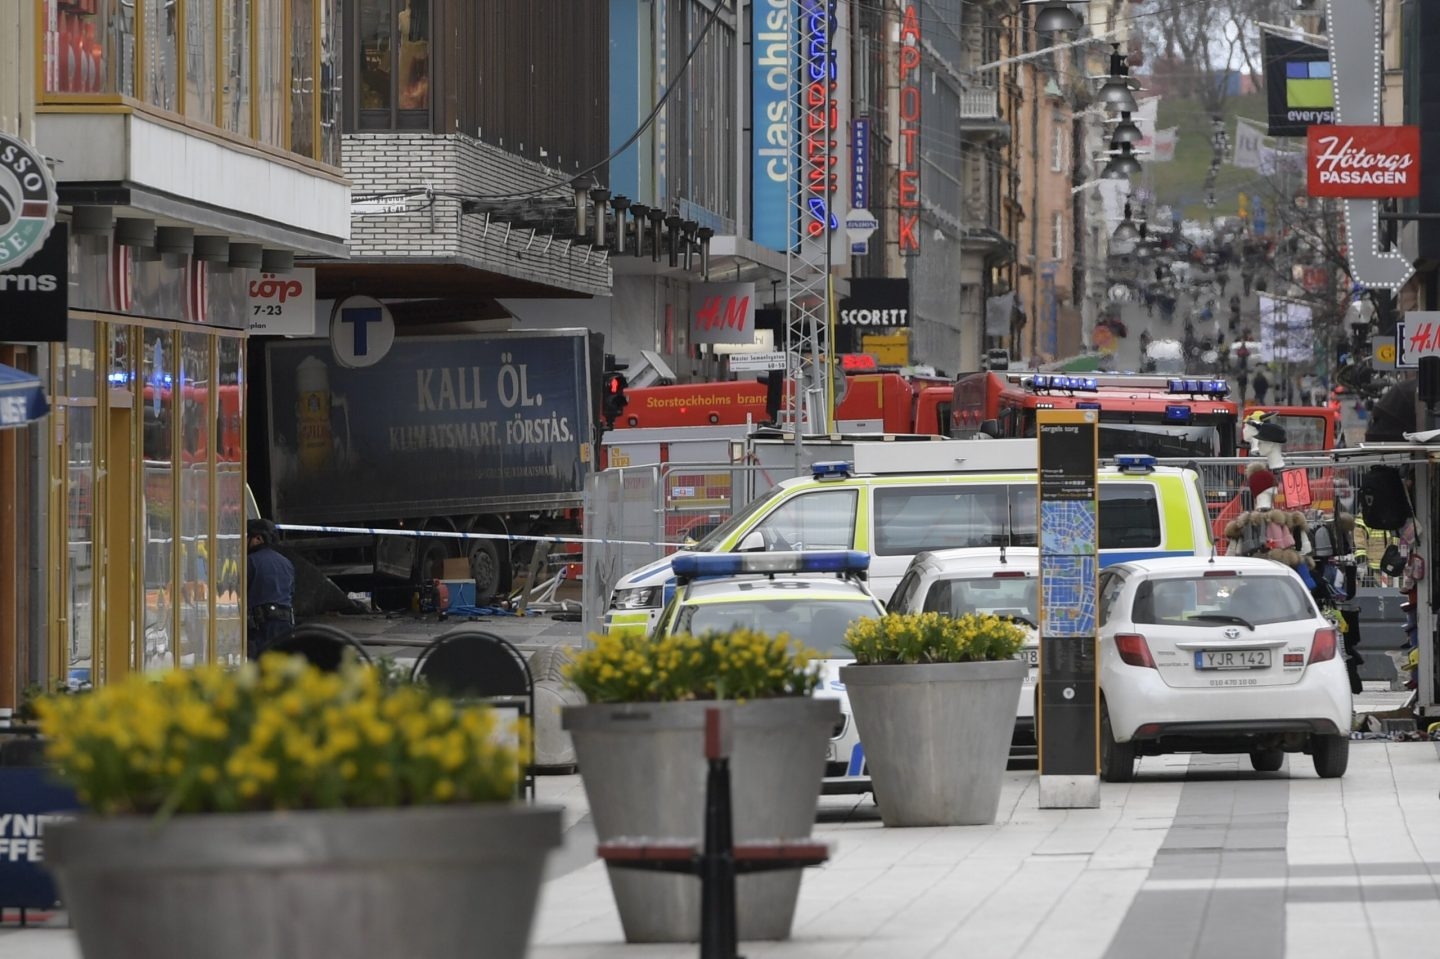 Un camión ha arrollado a la gente en una calle comercial de Estocolmo, povocando la muerte de al menos tres personas.